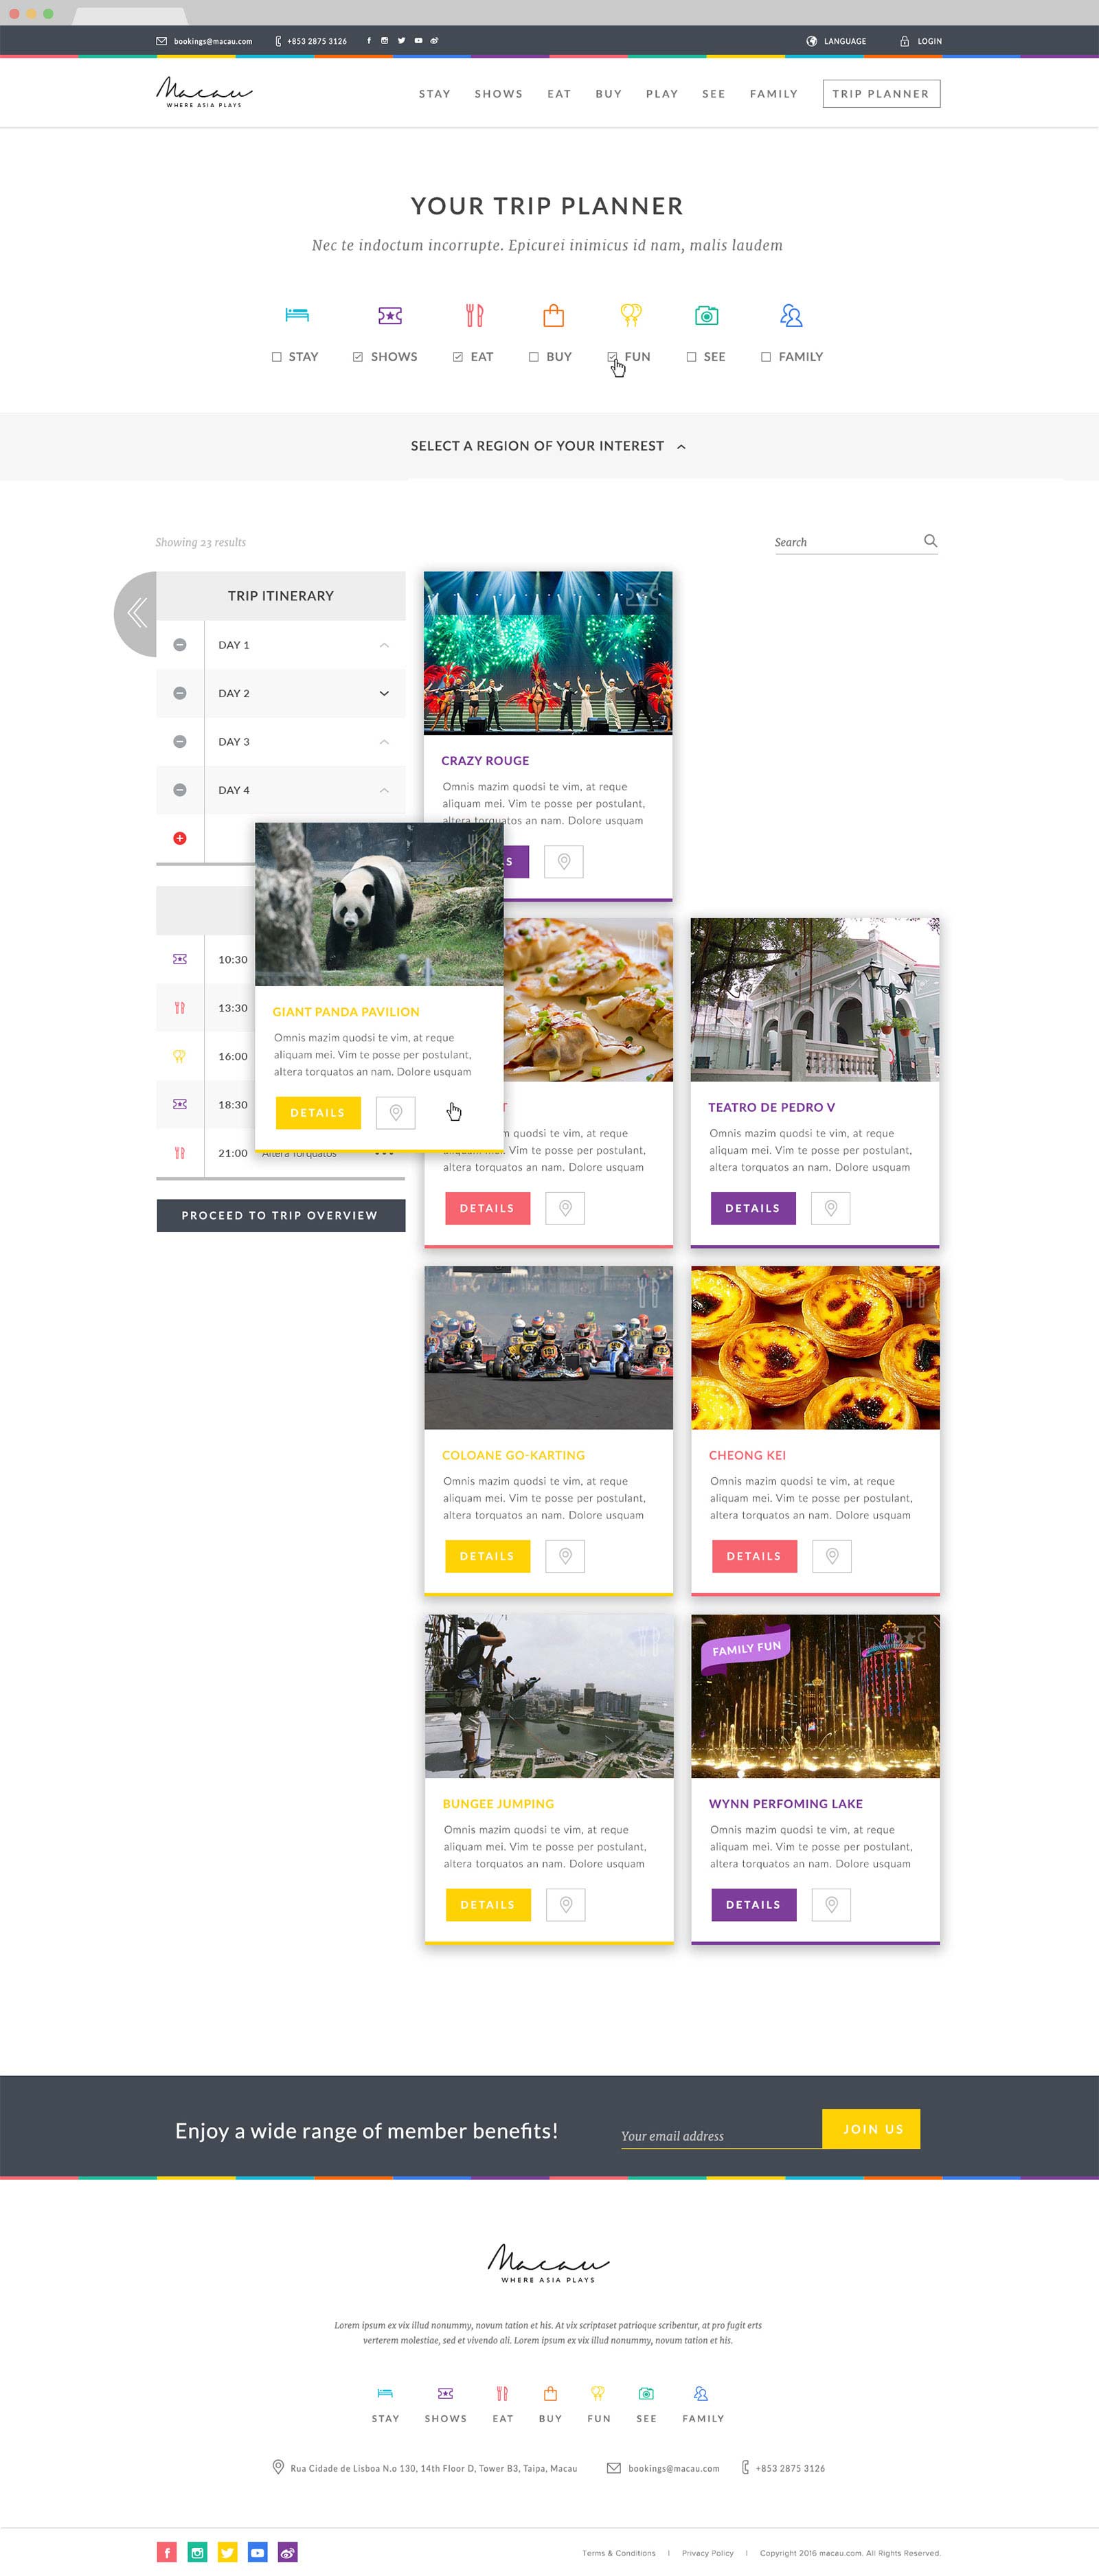 web design bali macau.com 03 - Macau.com